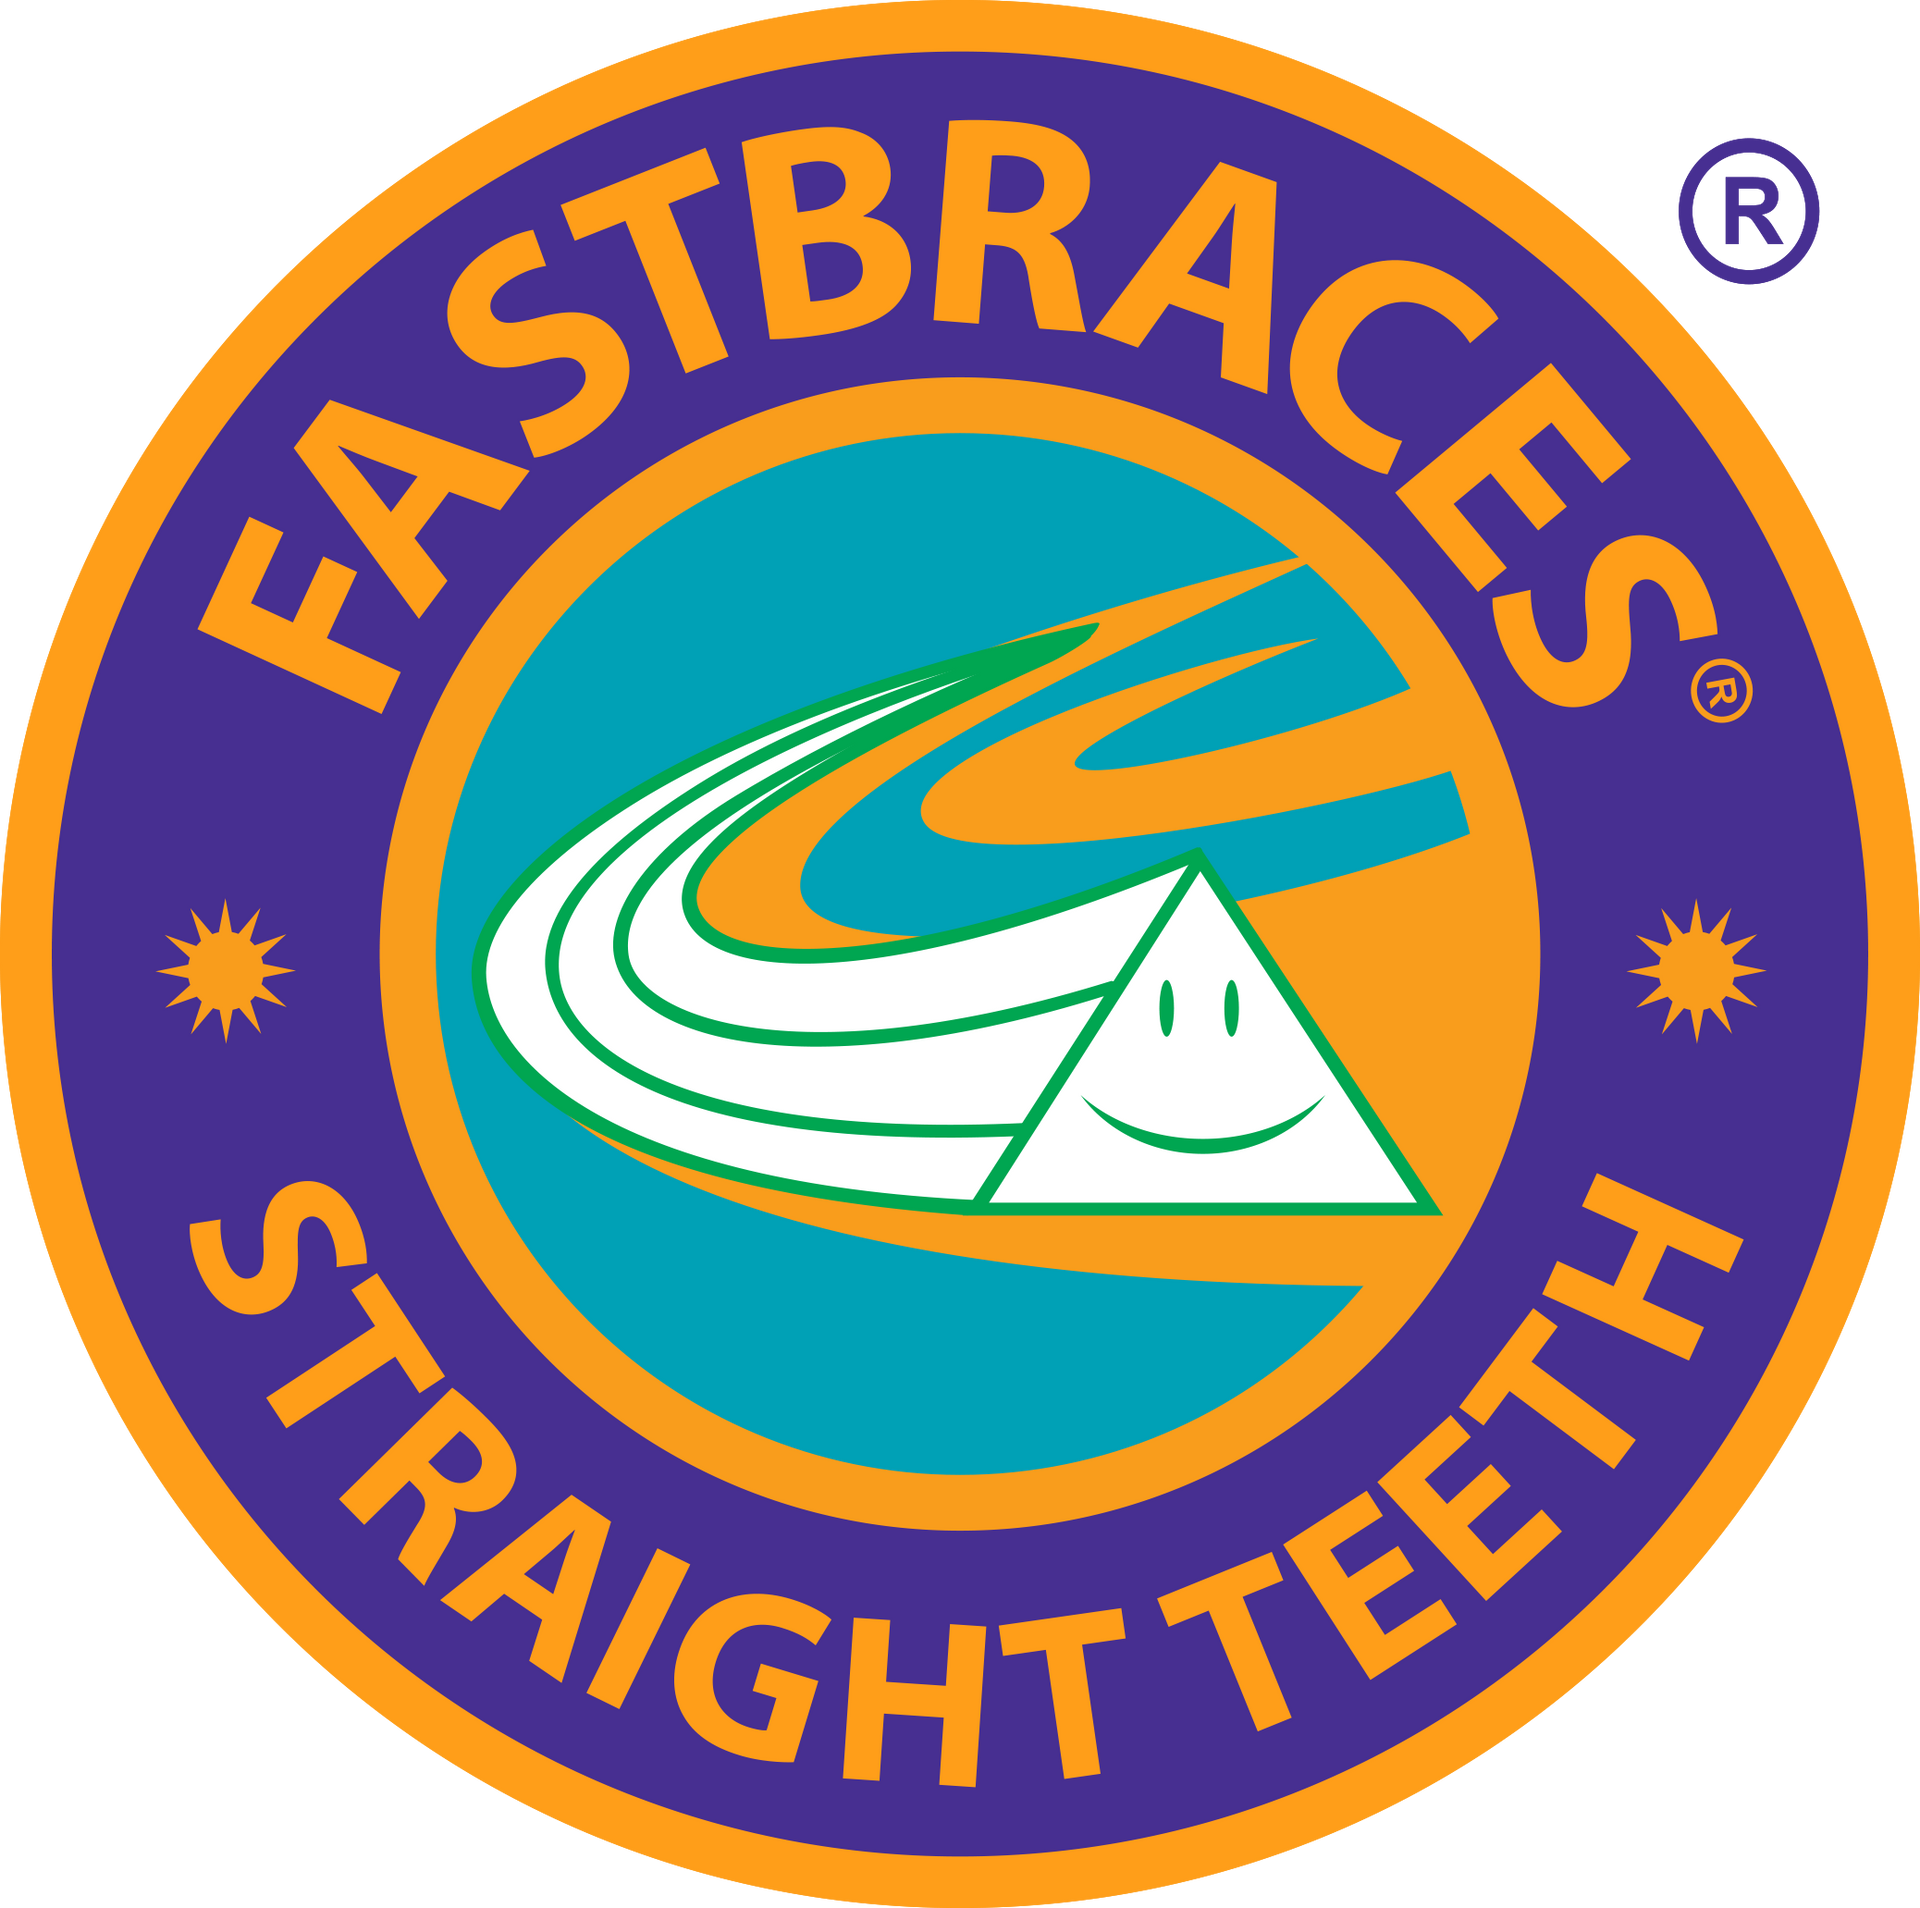 Fast Braces Straight Teeth